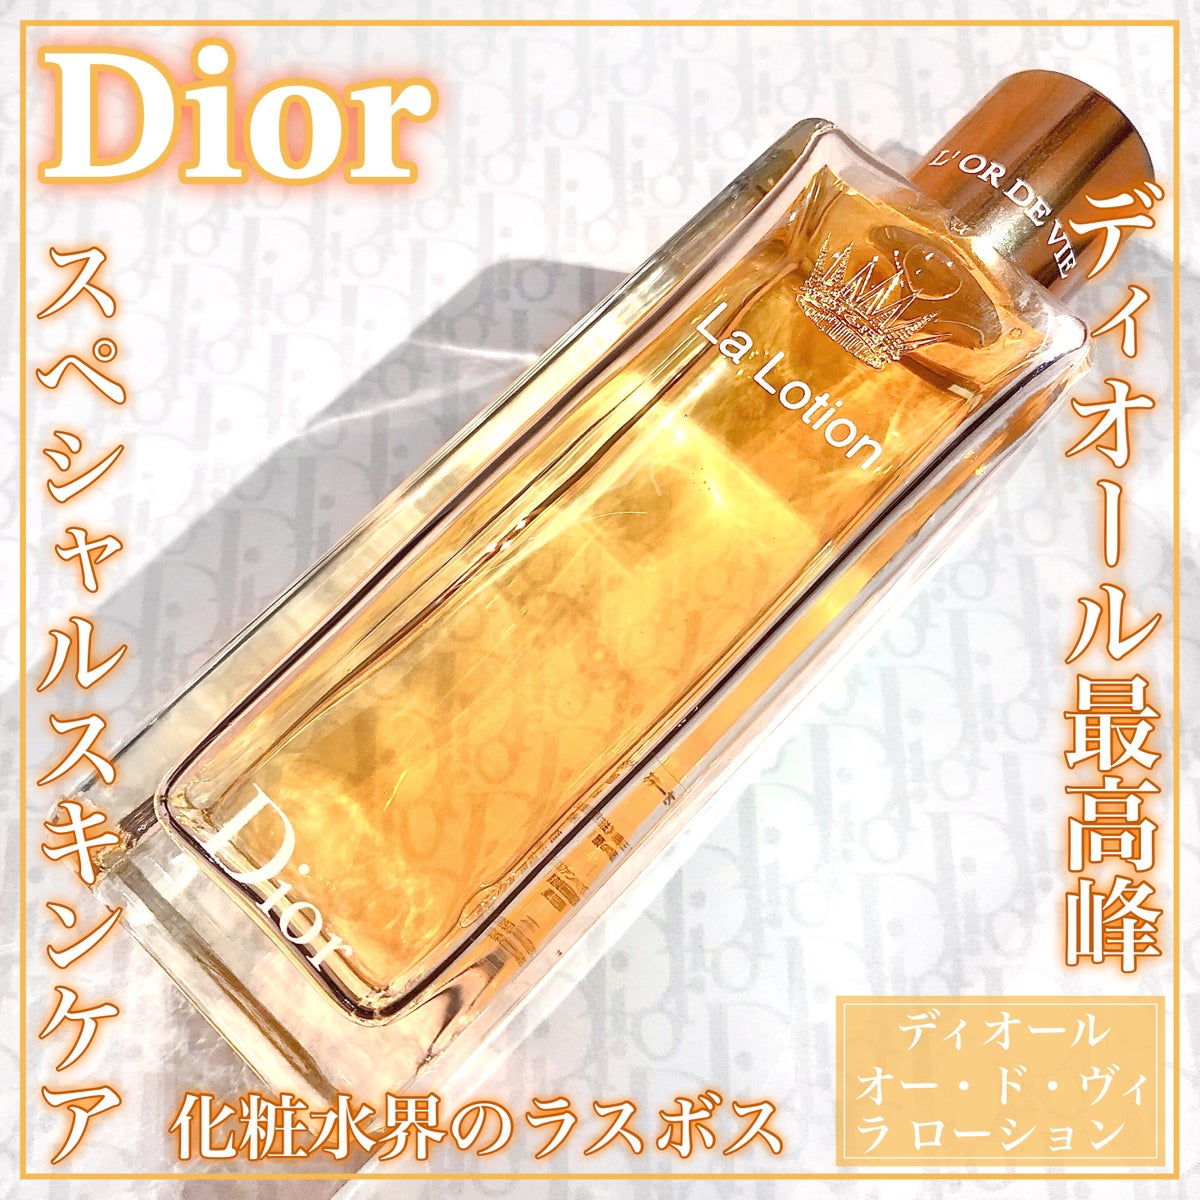 Dior ディオールオー・ド・ヴィ ラ ローション - 化粧水・ローション 